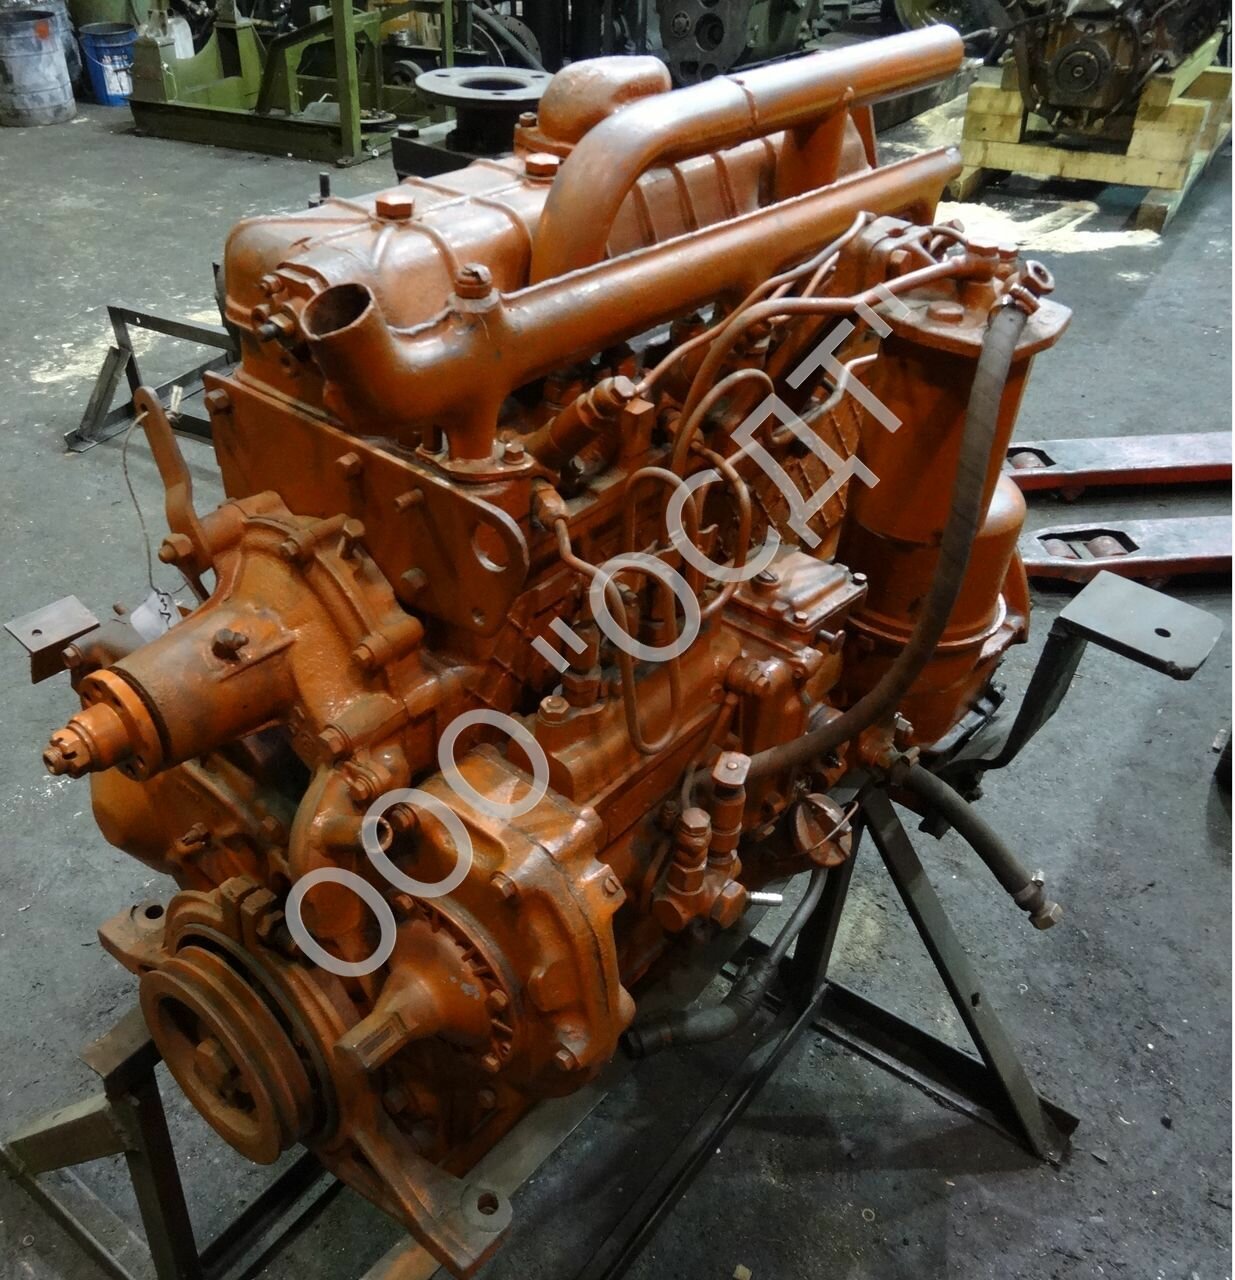  двигатели: Двигатель СМД: характеристики, описание, обслуживание .